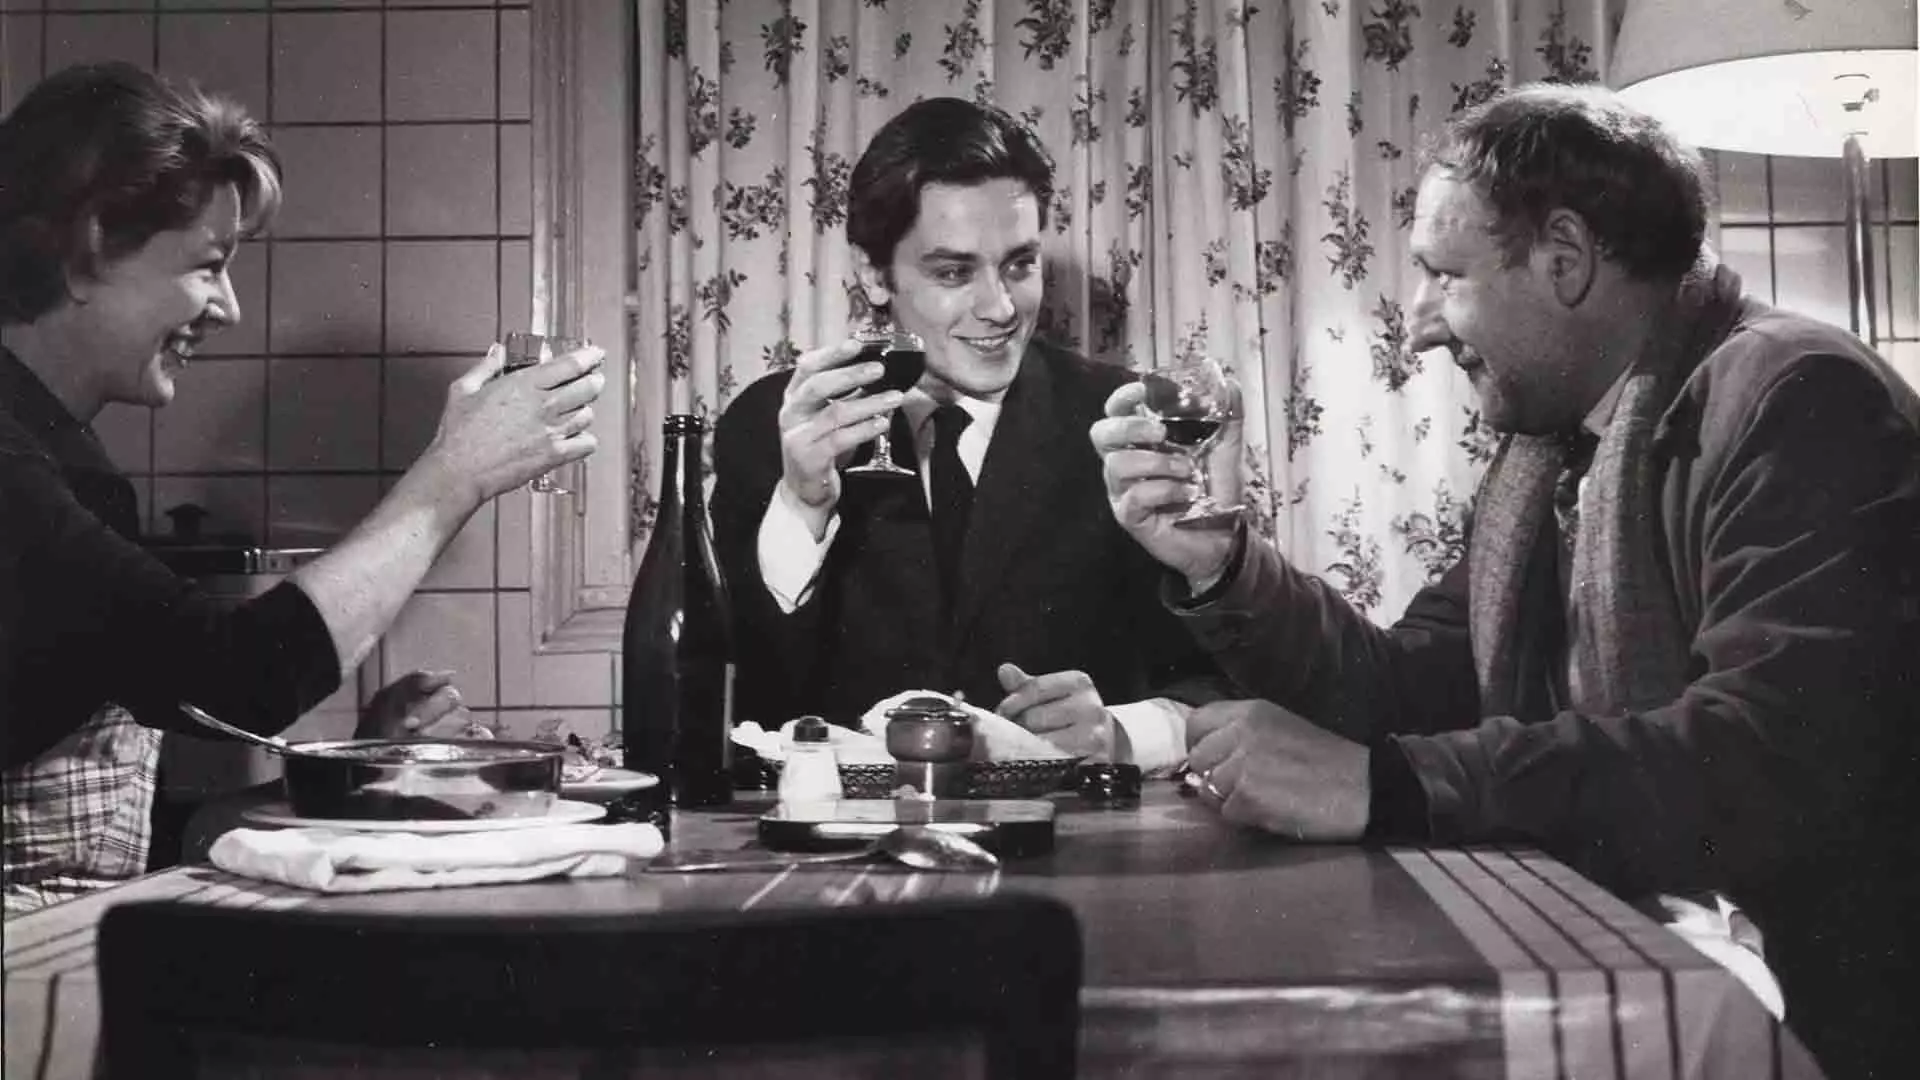 آلن دلون در حال خوردن نوشیدنی به همراه دو بازیگر دیگر در فیلم The Devil and the Ten Commandments